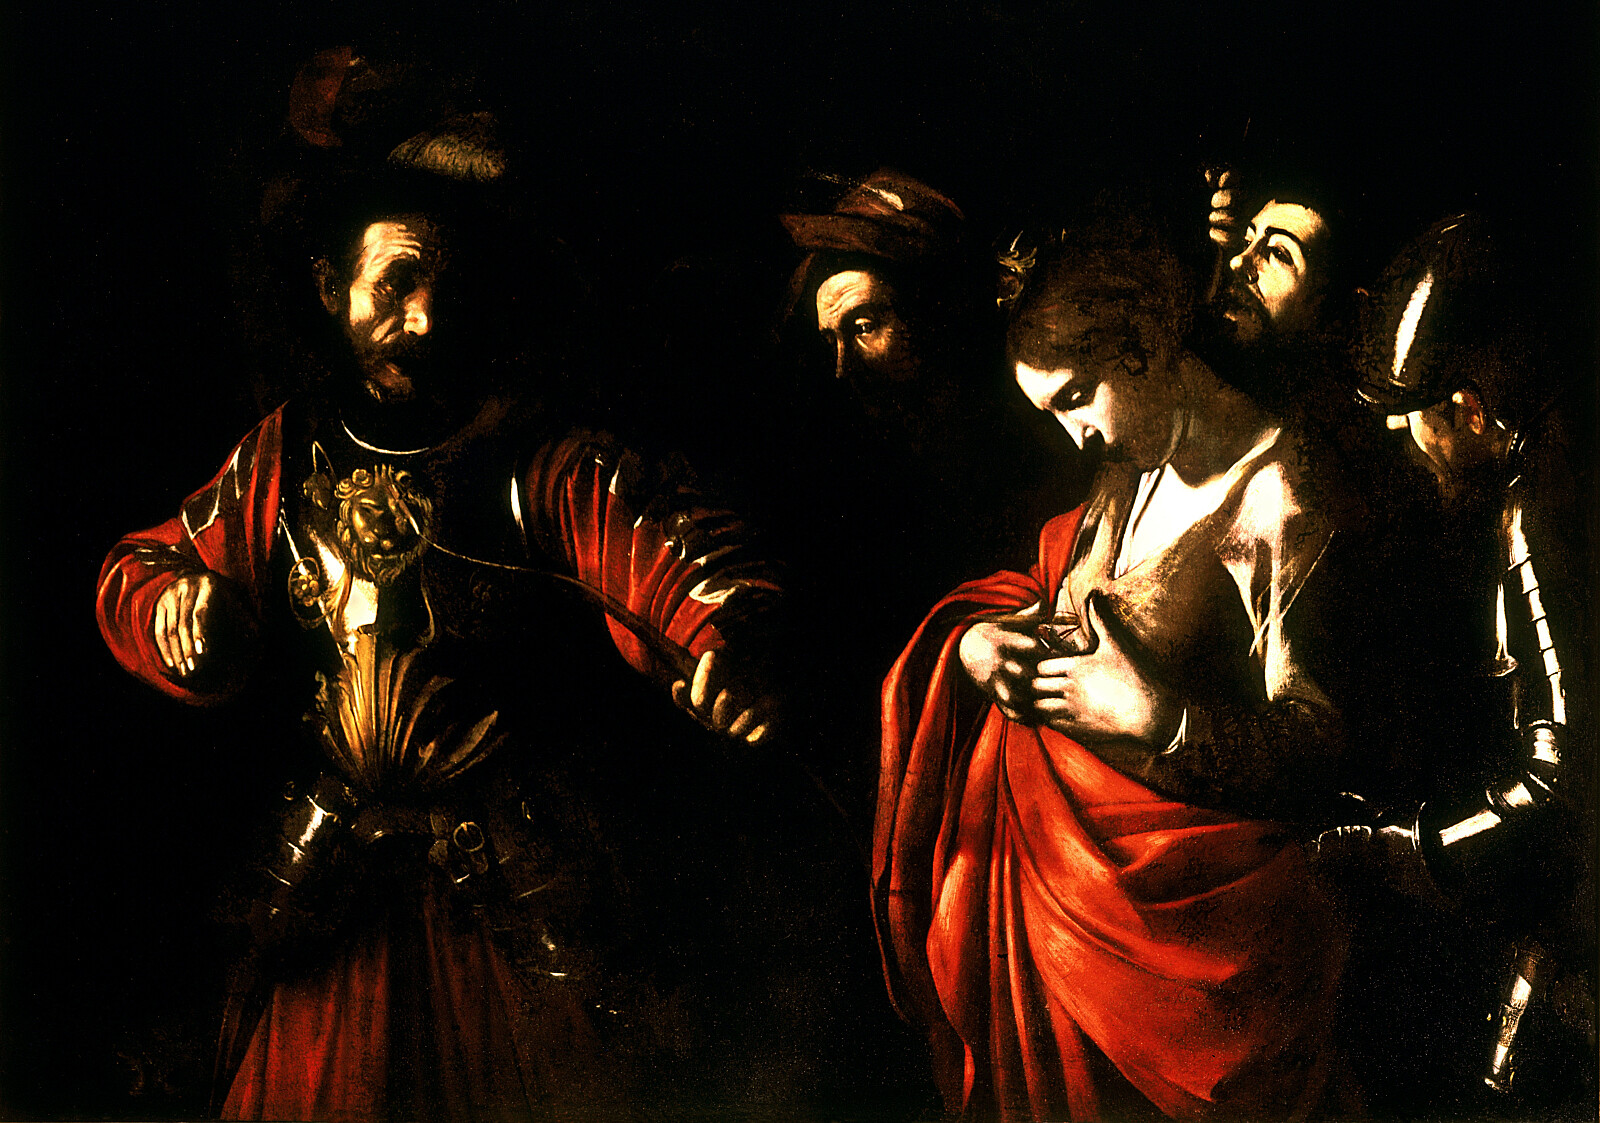 Męczeństwo św. Urszuli - Caravaggio, Public domain, via Wikimedia Commons